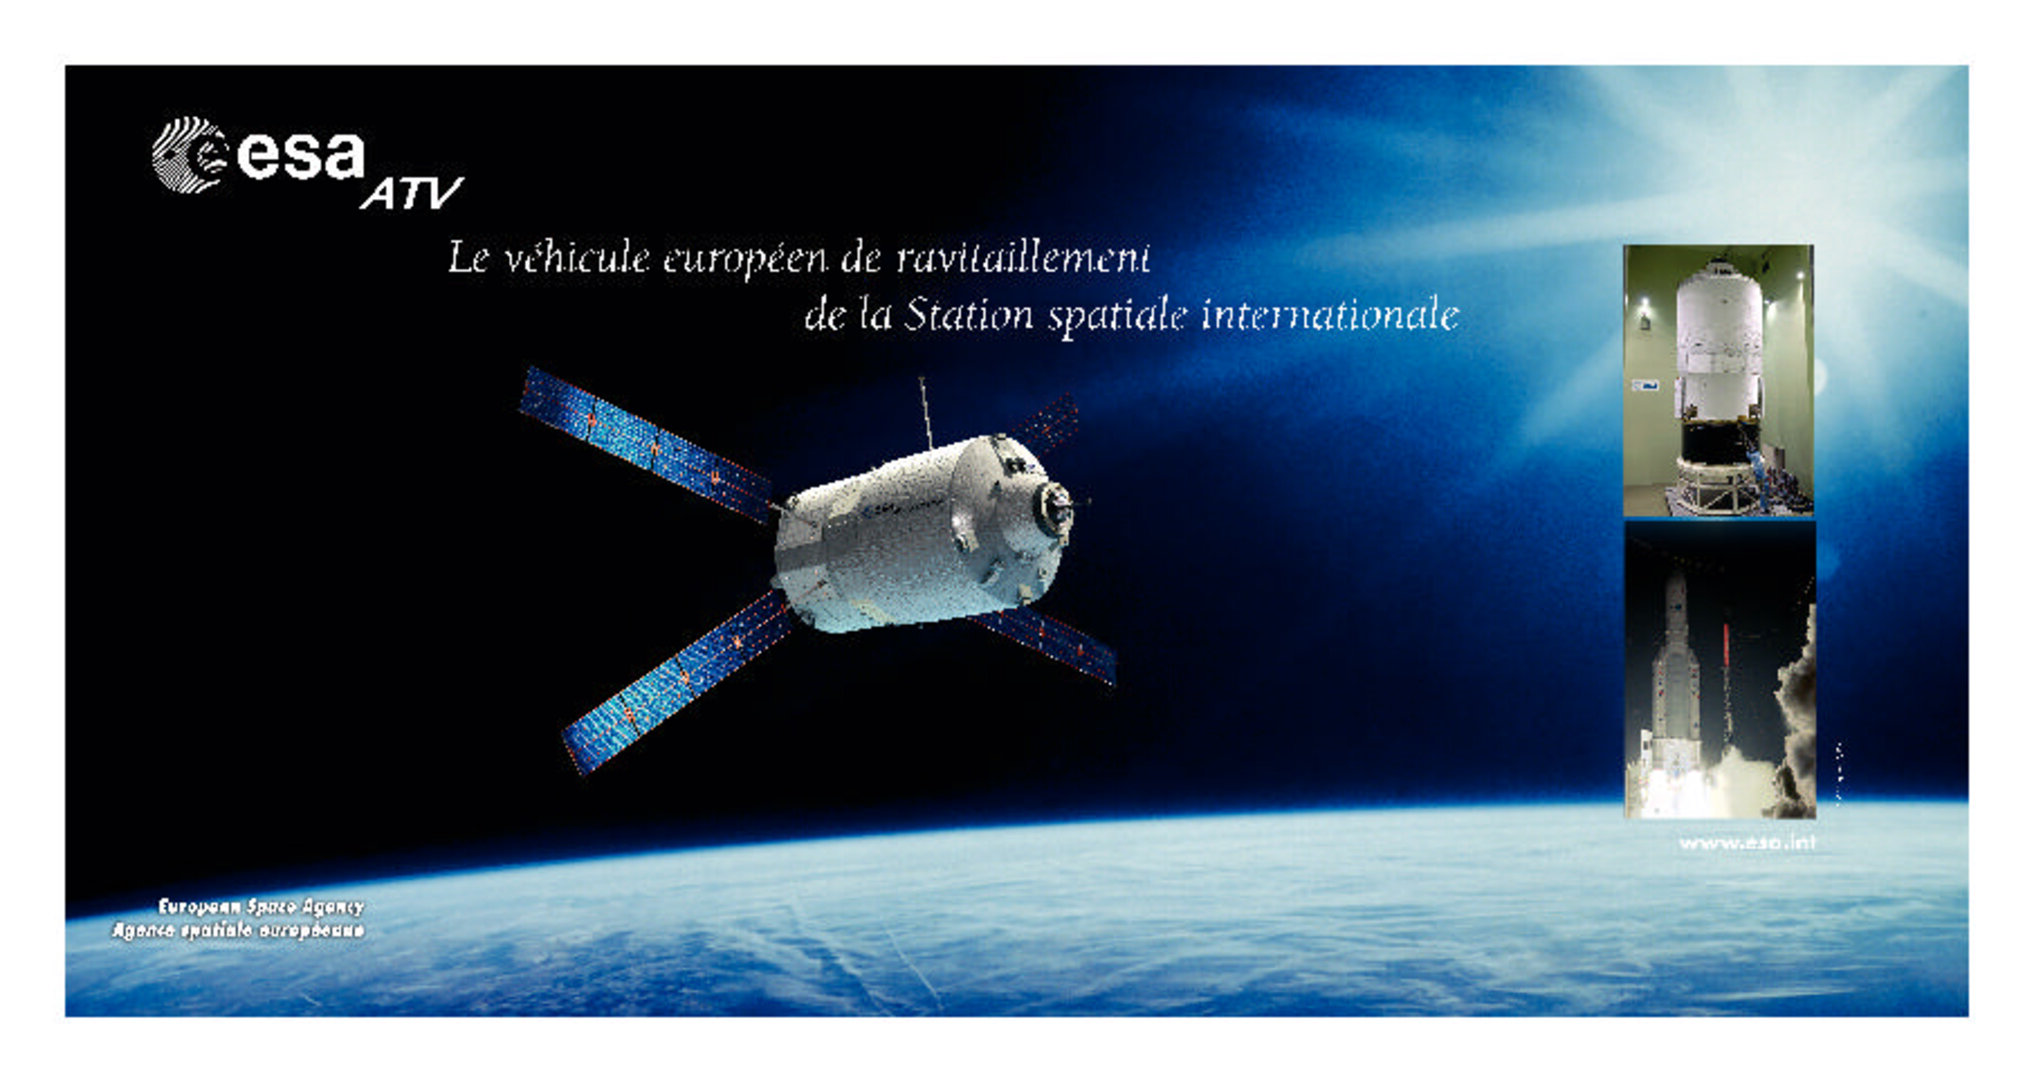 Toile de fond - Le véhicule européen de ravitaillement de la Station spatiale internationale